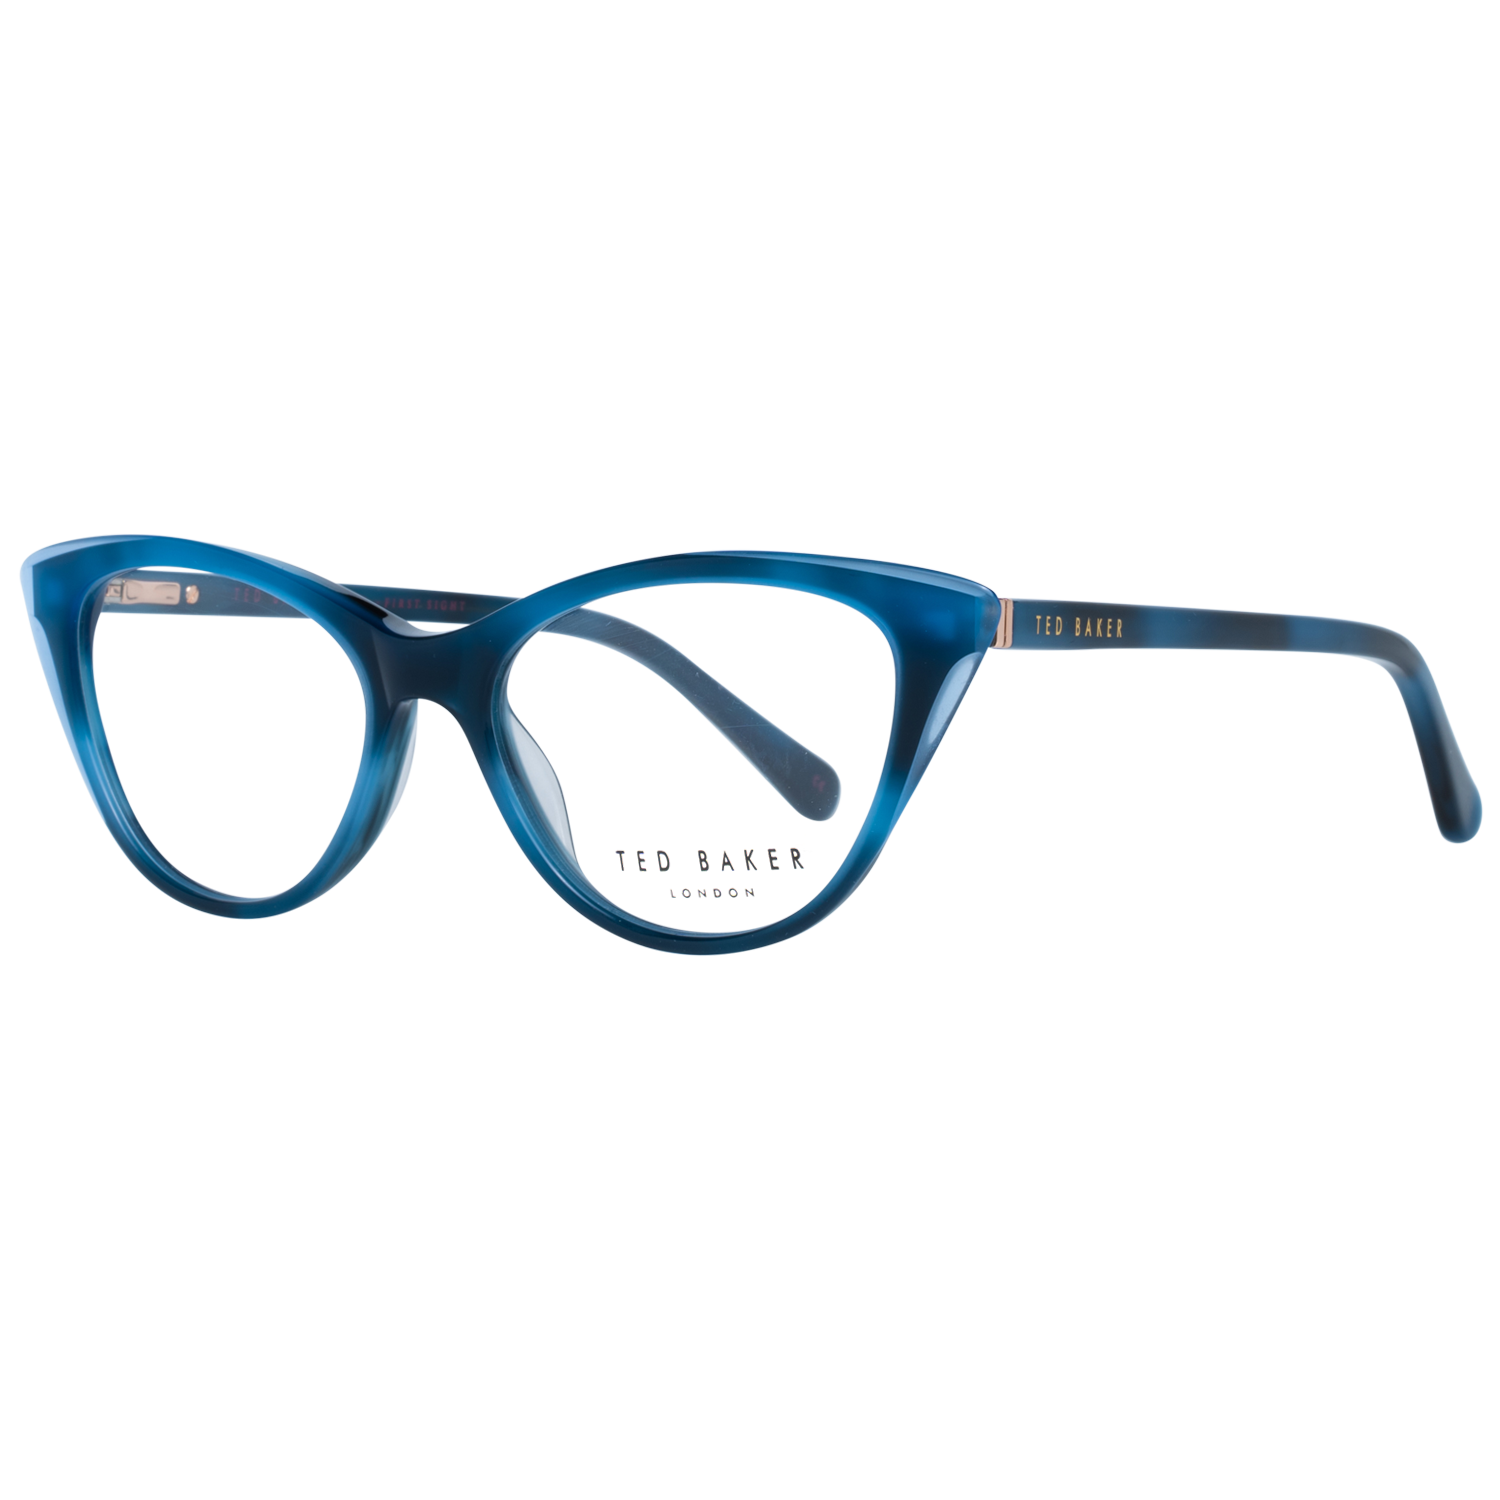 Ted Baker Frames Ted Baker Optical Frame Prescription Glasses TB9194 611 49 Eyeglasses Eyewear UK USA Australia 